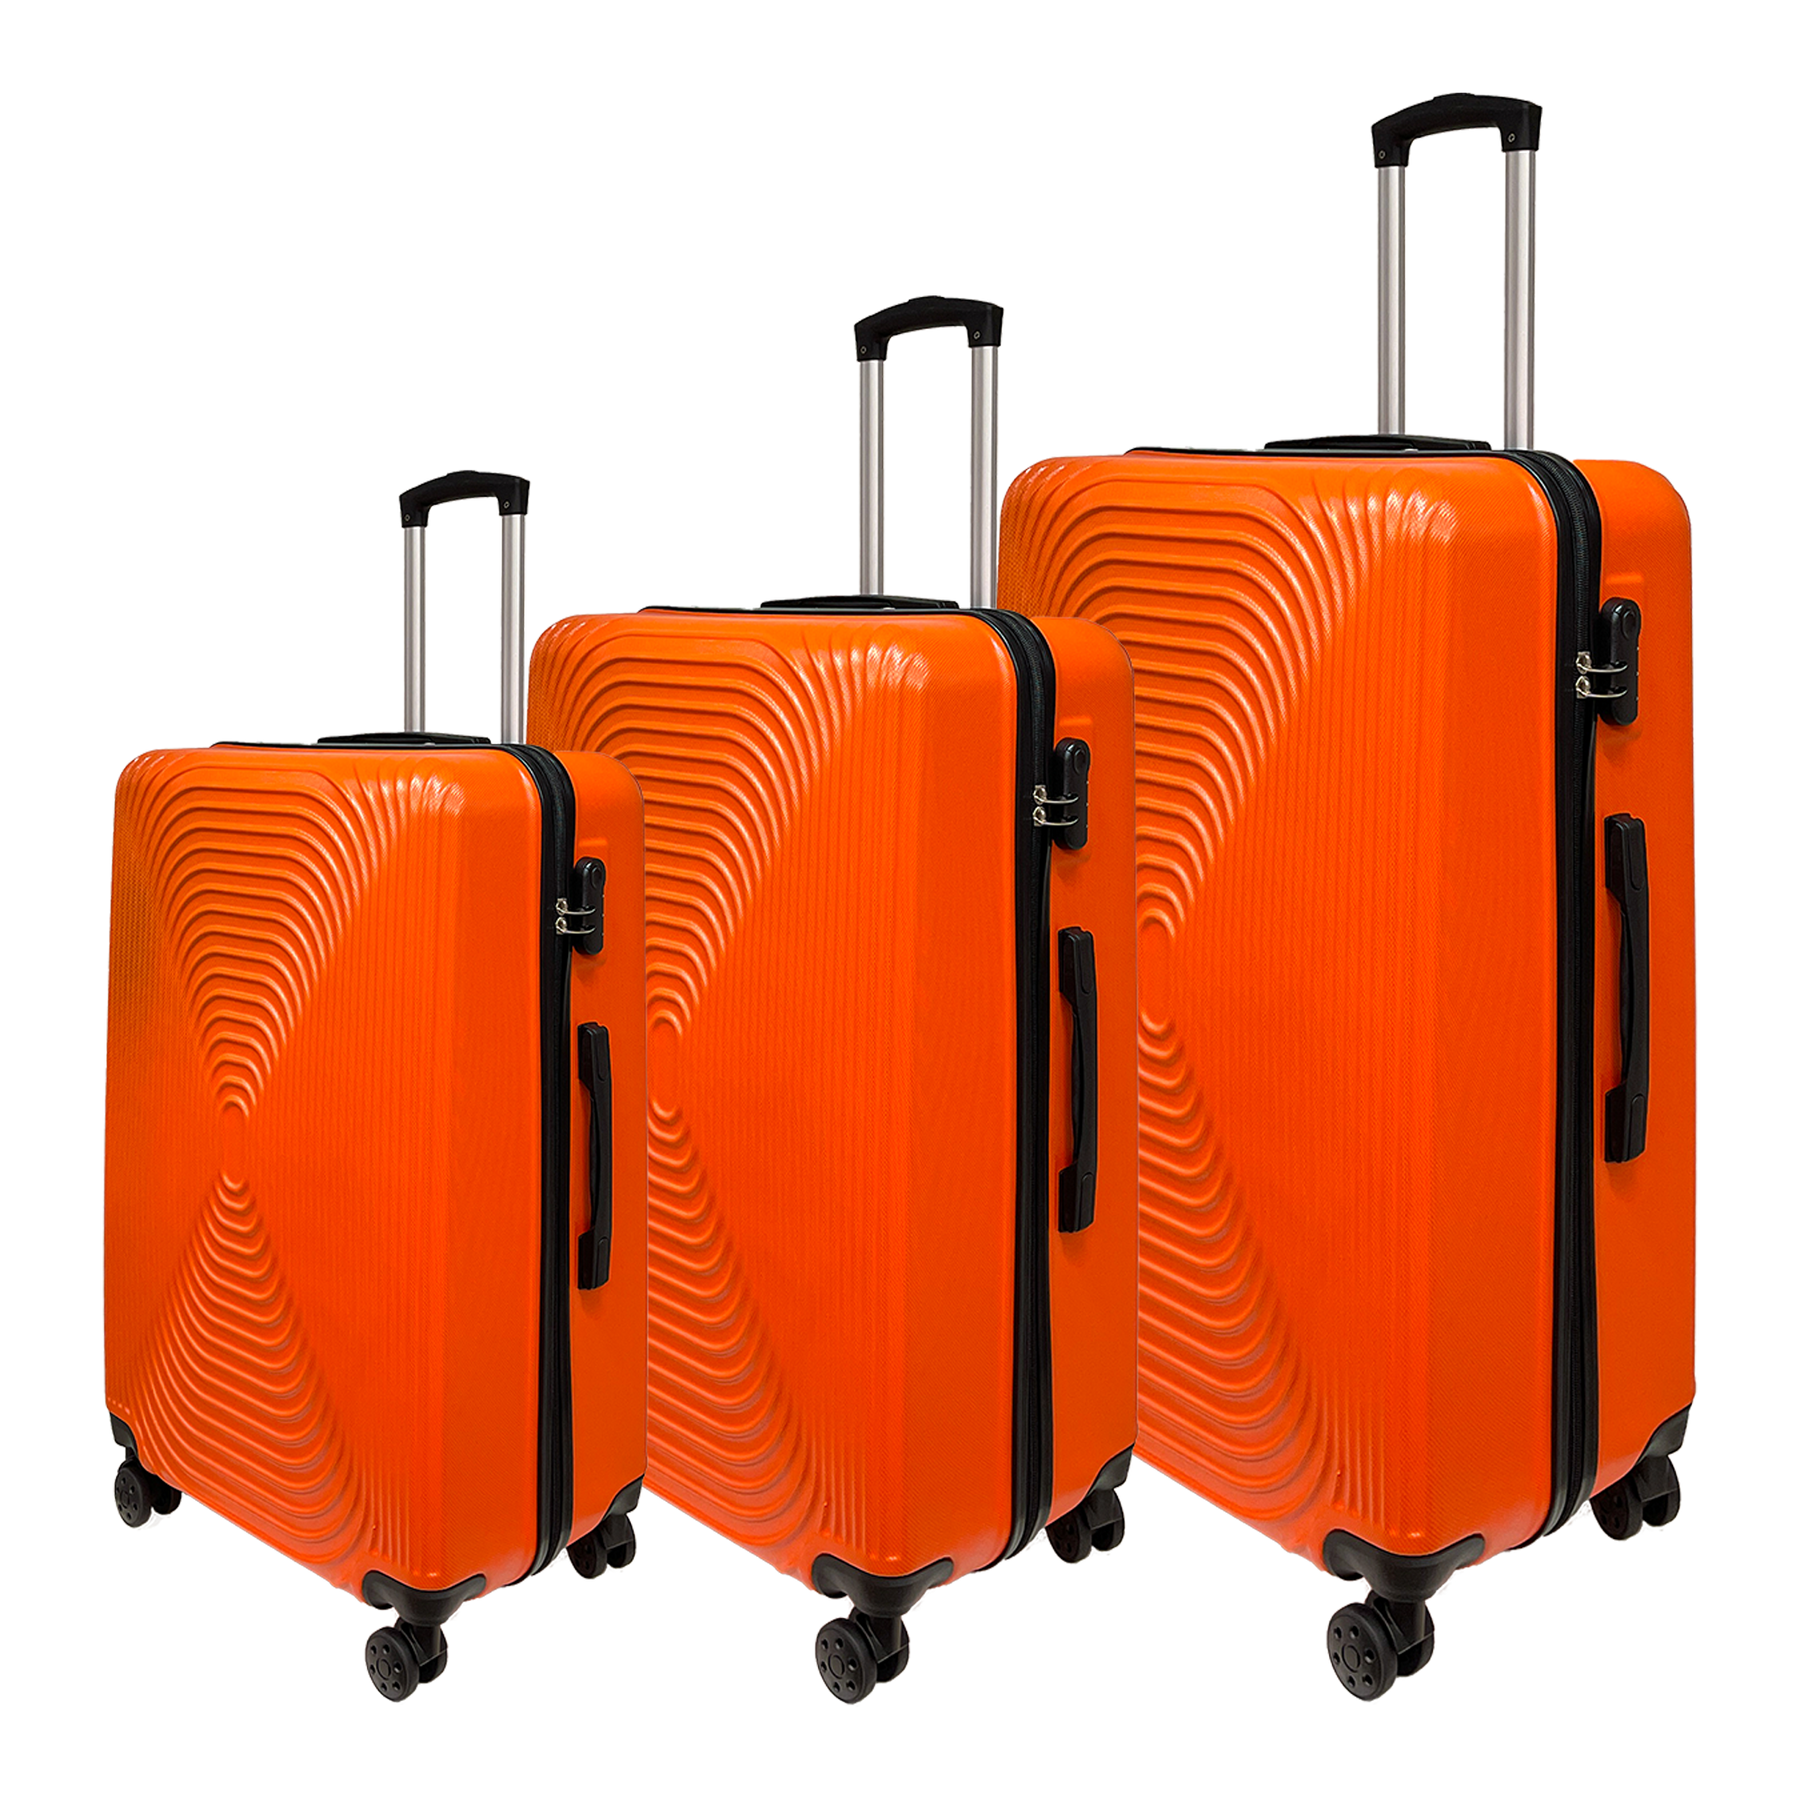 Σετ 3 βαλίτσες τροχήλατες Ormi WavyLine από ανθεκτικό ABS υλικό, υπερελαφρές - Μικρή, Μεσαία και Μεγάλη